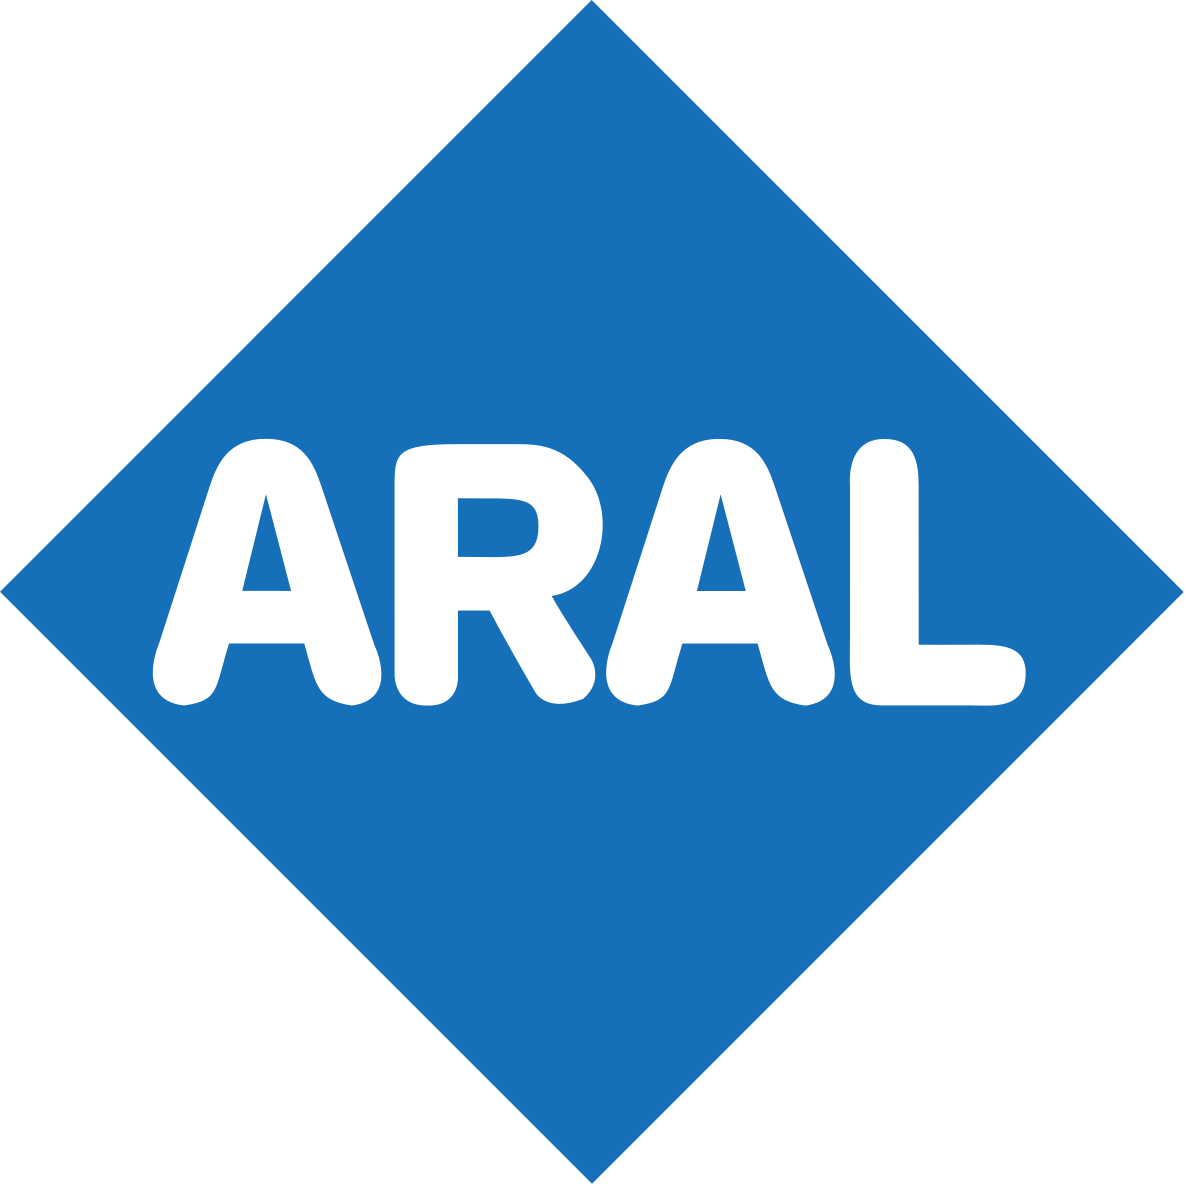 Der Kraftstoff besteht aus Benzol, das zur chemischen Gruppe der Aromaten gehört, sowie aus Benzin, das den Aliphaten zugeordnet wird. Und schon war die Marke Aral geboren.